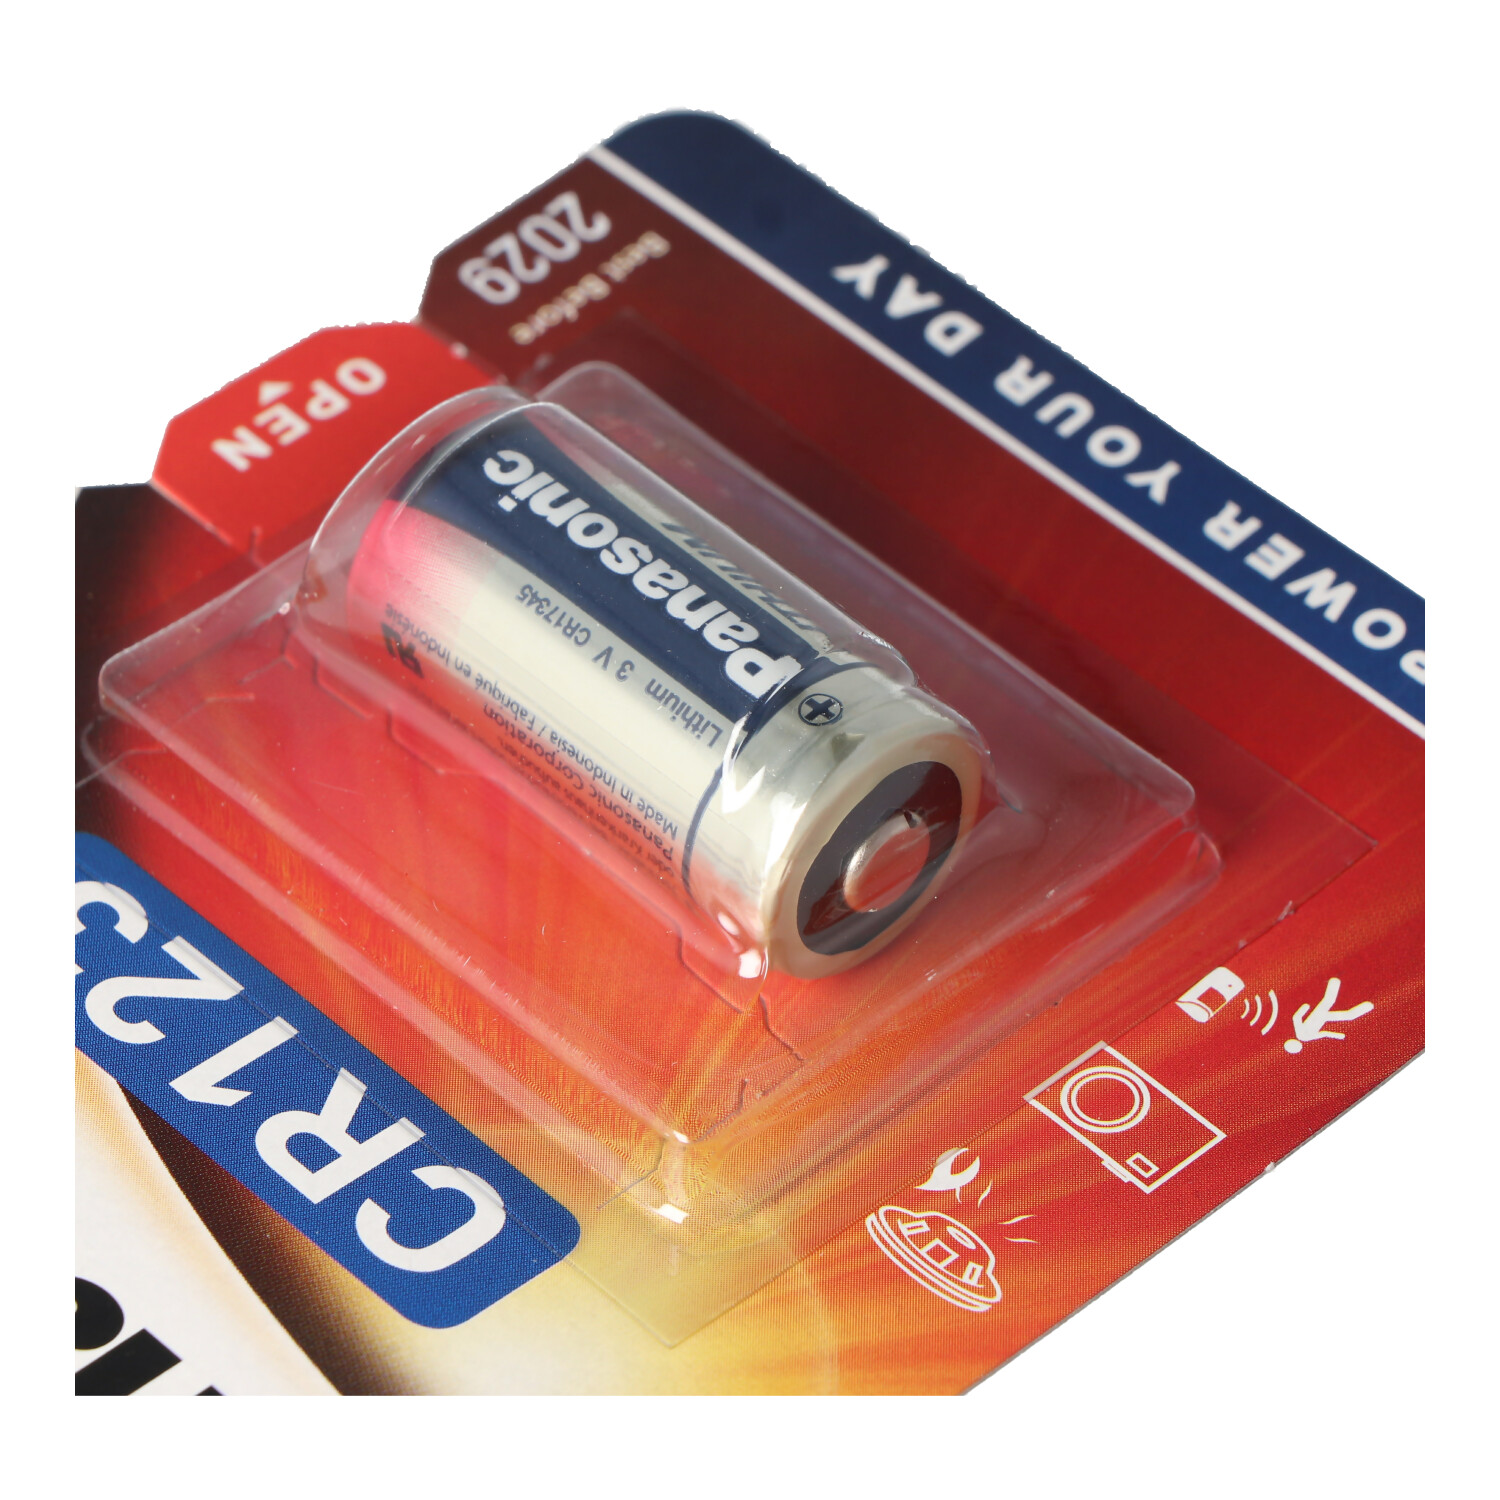 Alarmanlage Stirnplampe Panasonic CR123 zylindrische Lithium-Batterie für leichte Geräte mit hohem Energiebedarf wie Rauchmelder 10 Packungen Kameras 3V 10 Stück